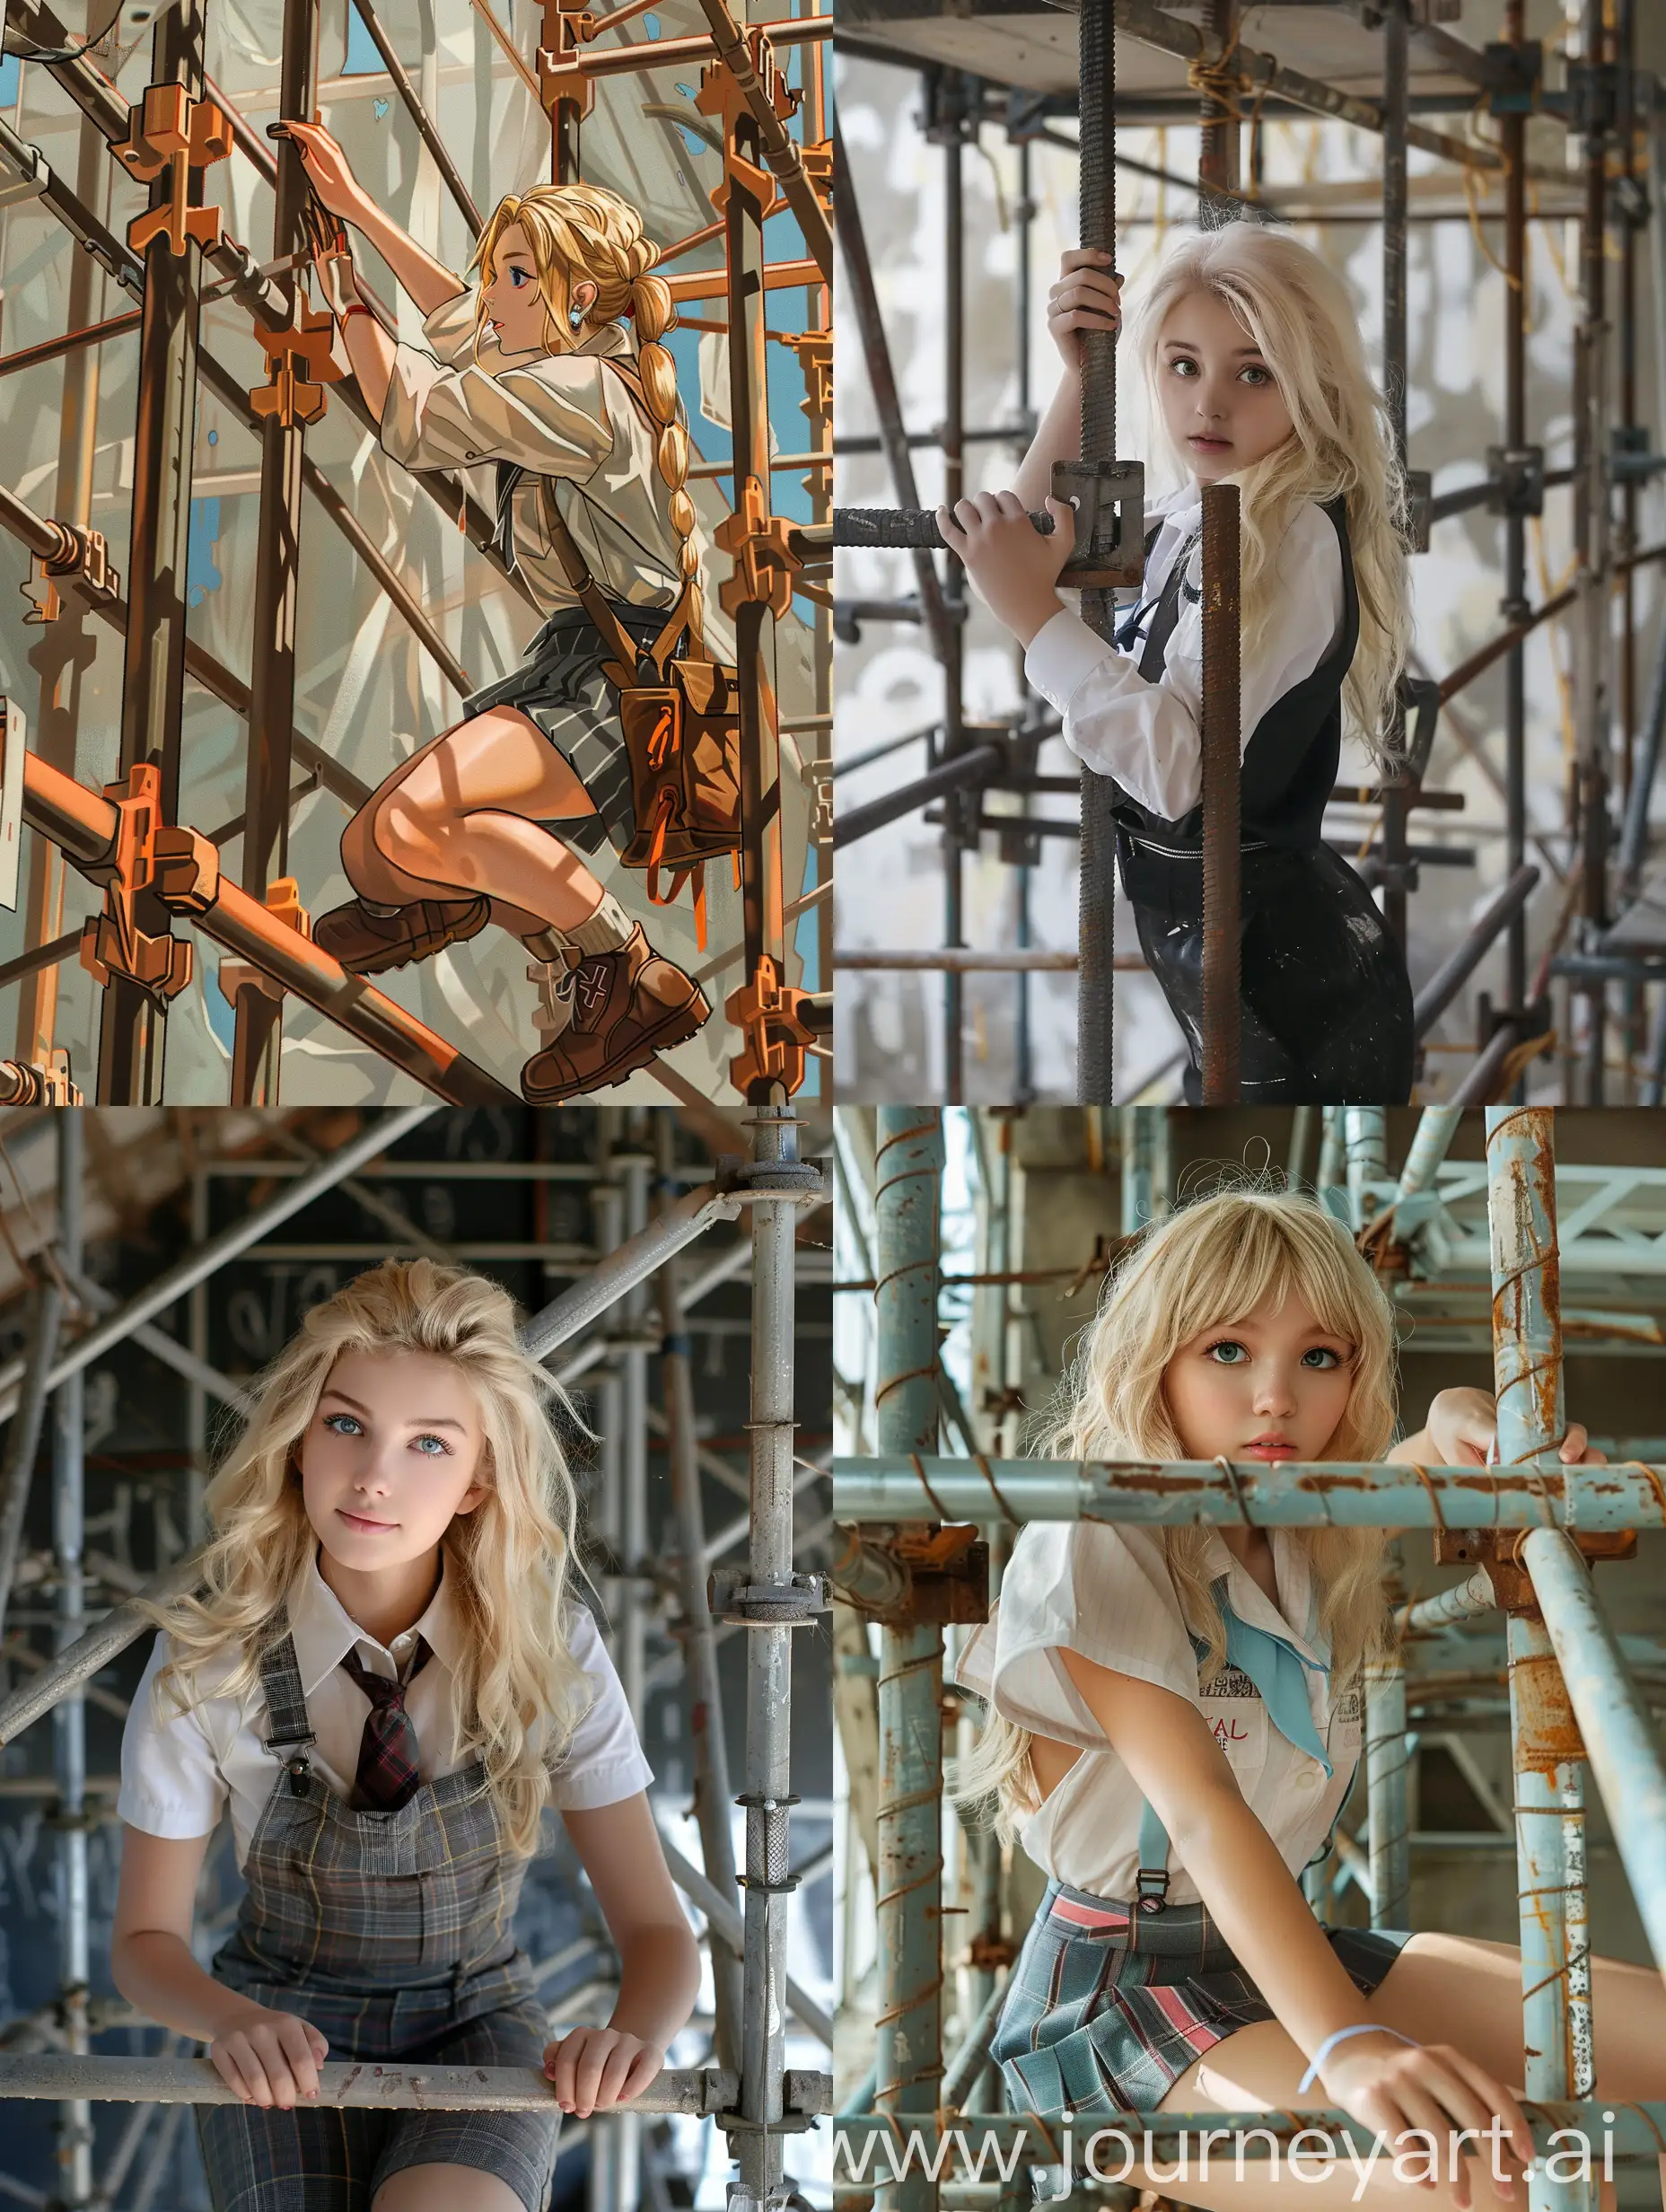 Young-Blonde-Woman-in-School-Uniform-Working-on-Steel-Scaffolding